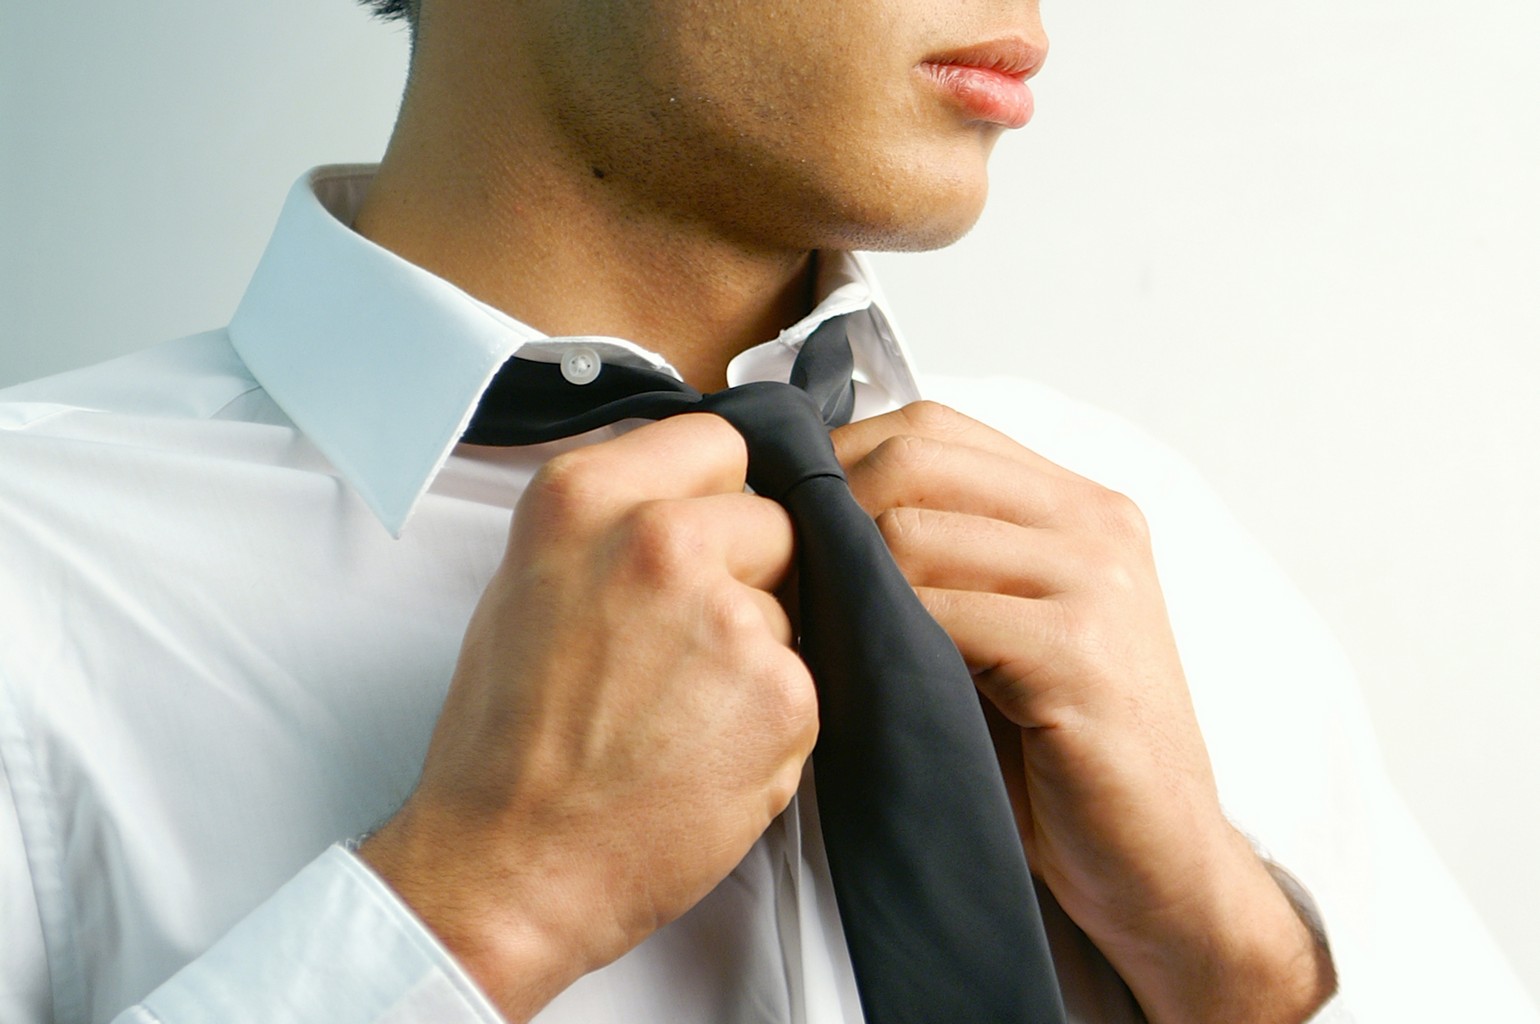 Неаккуратно завязанный галстук на человеке